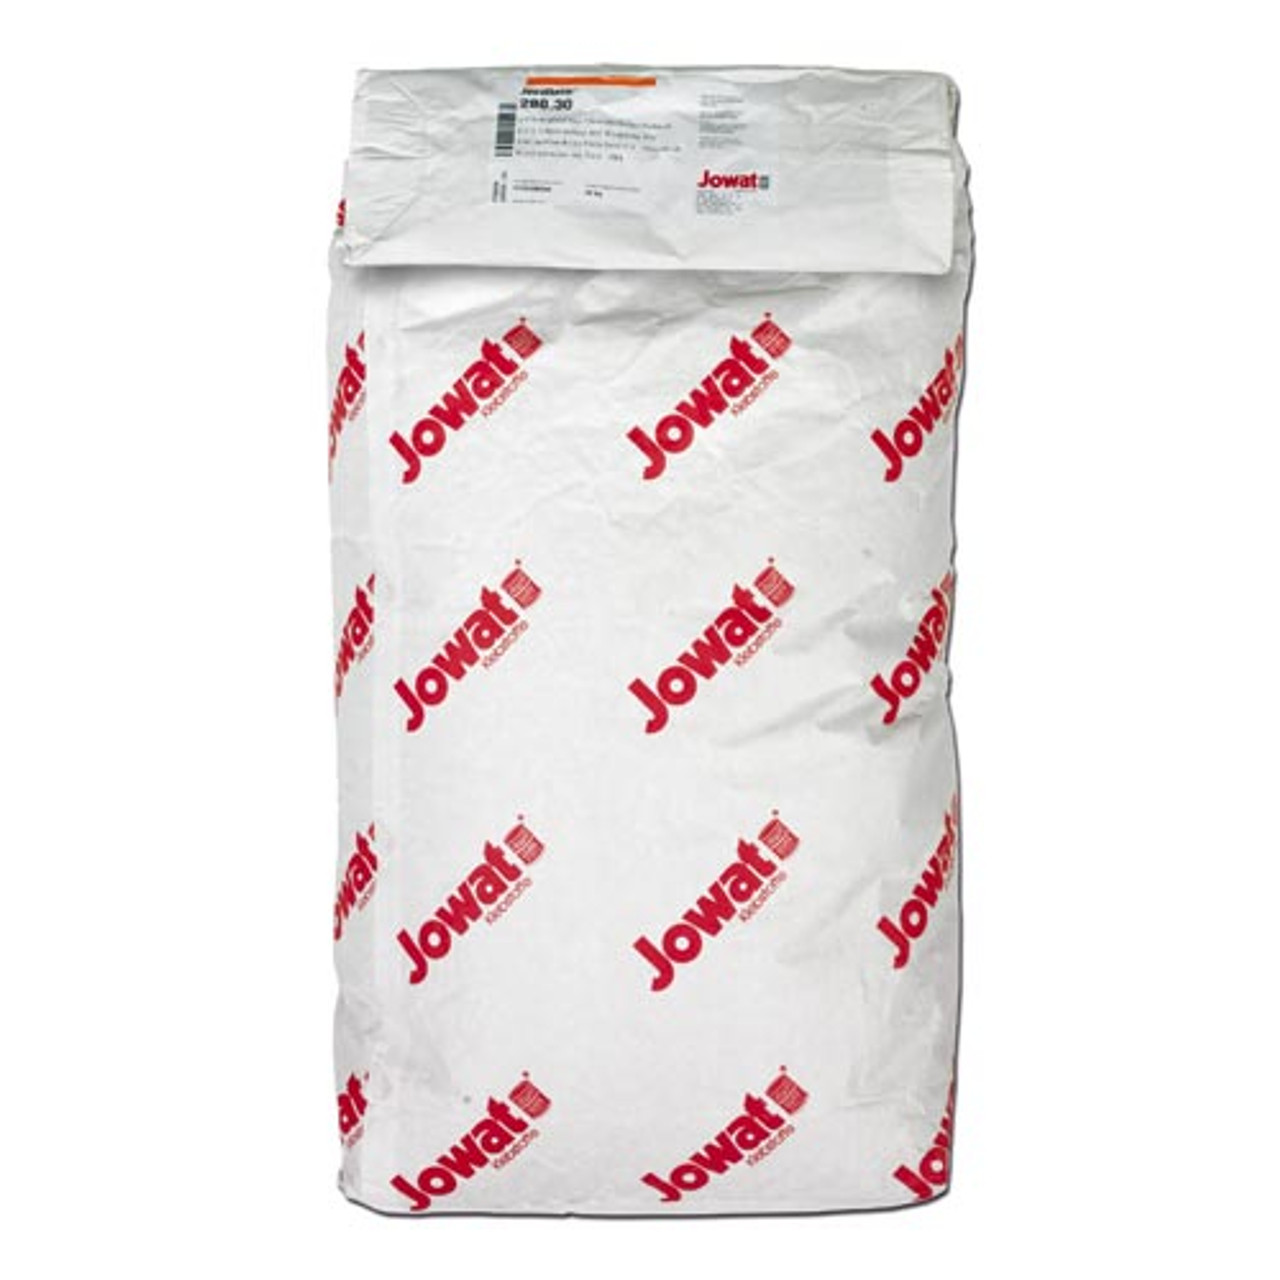 Jowat 288.60 Jowatherm Natural Granular  Hot Melt EVA Glue 20 KG Bag